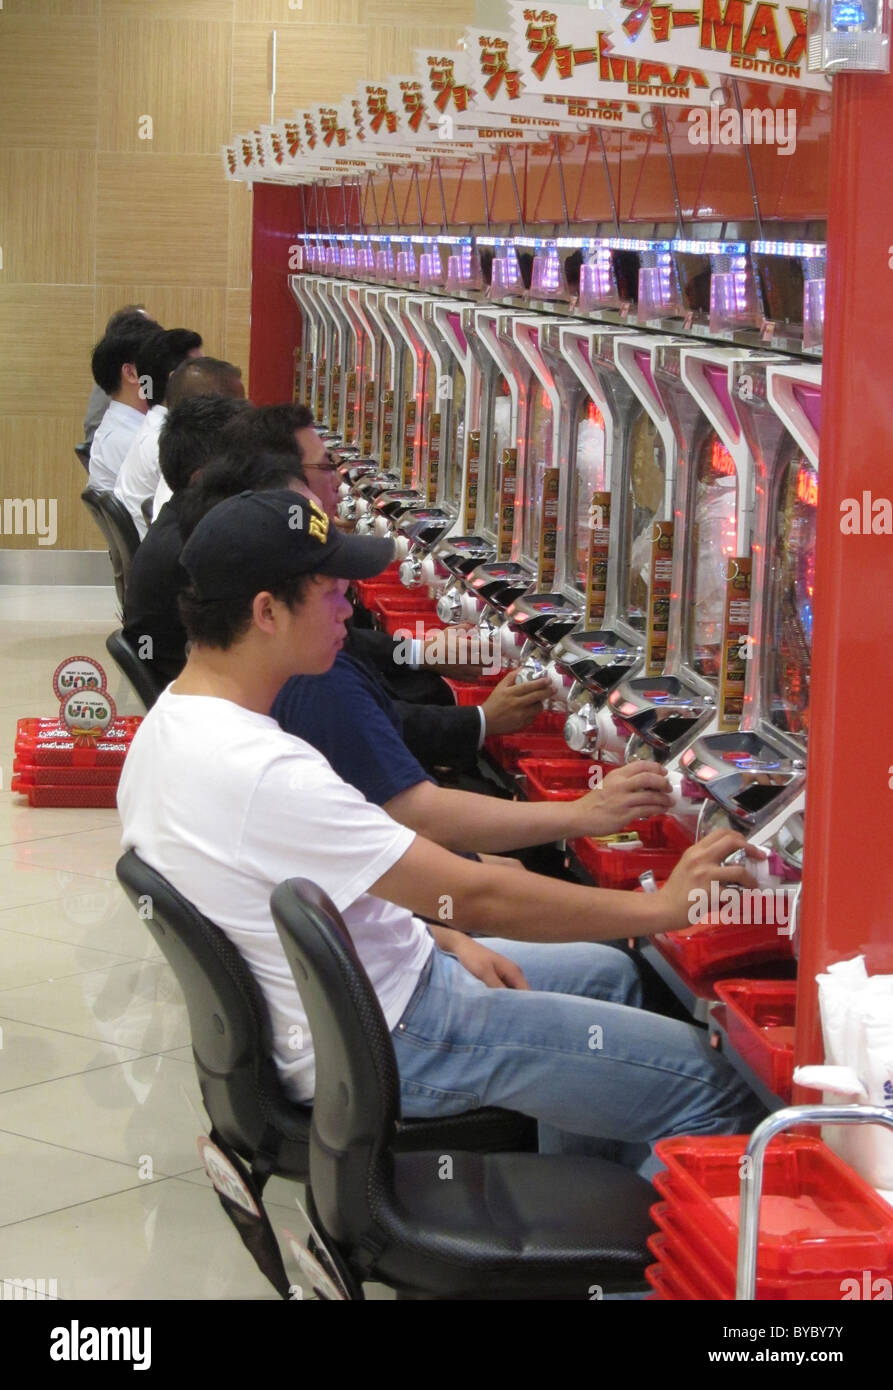 Pachisuro,Japon,,pachislo slot machine,arcade,tokyo,,jeu,les loisirs Banque D'Images